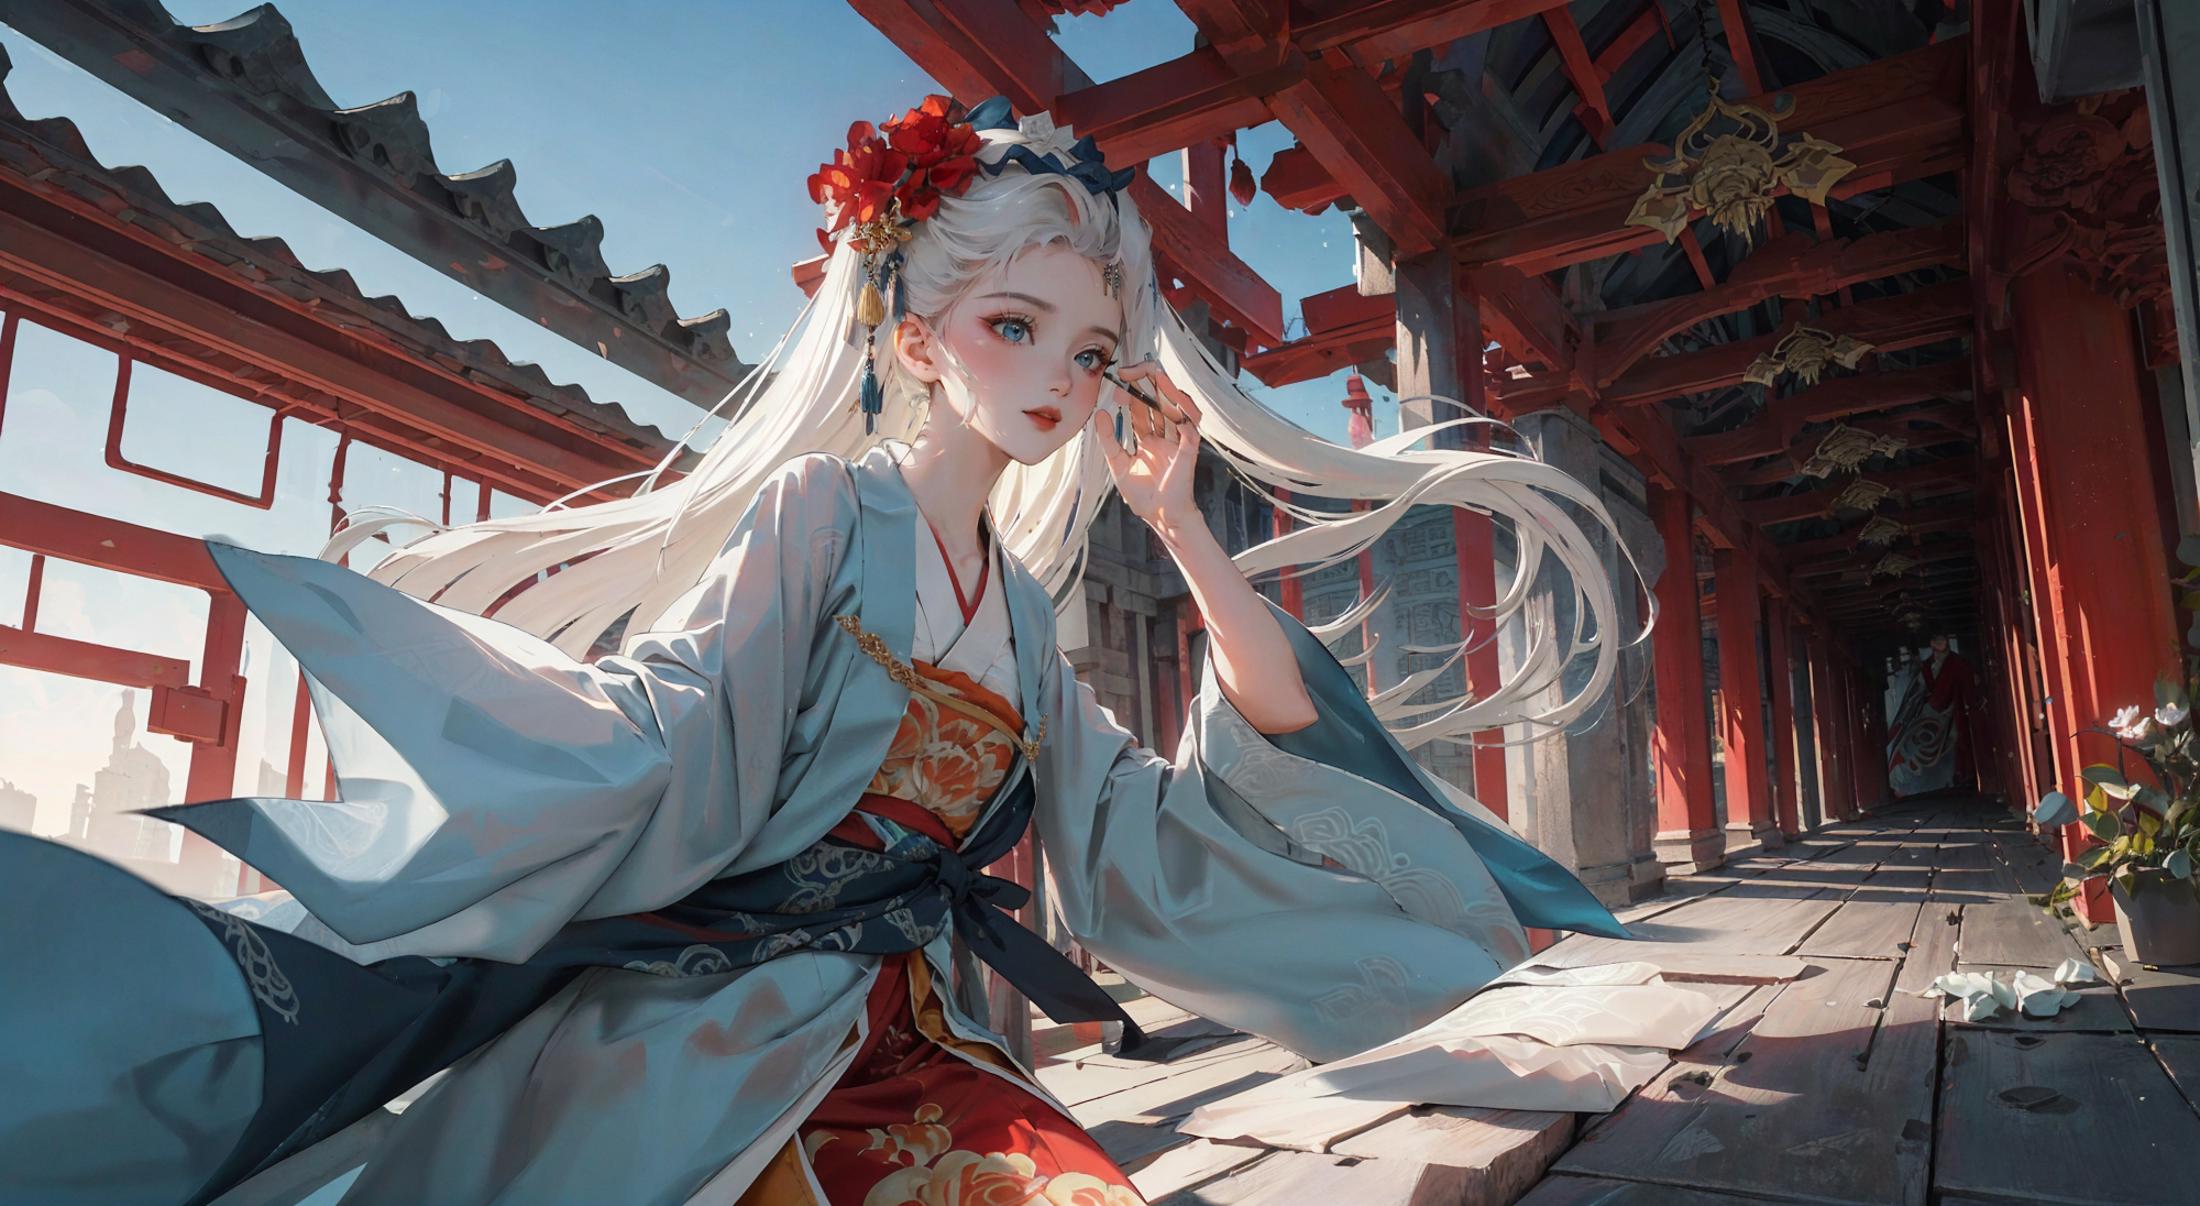 Zanhua 簪花 | Chinese style image by XRYCJ